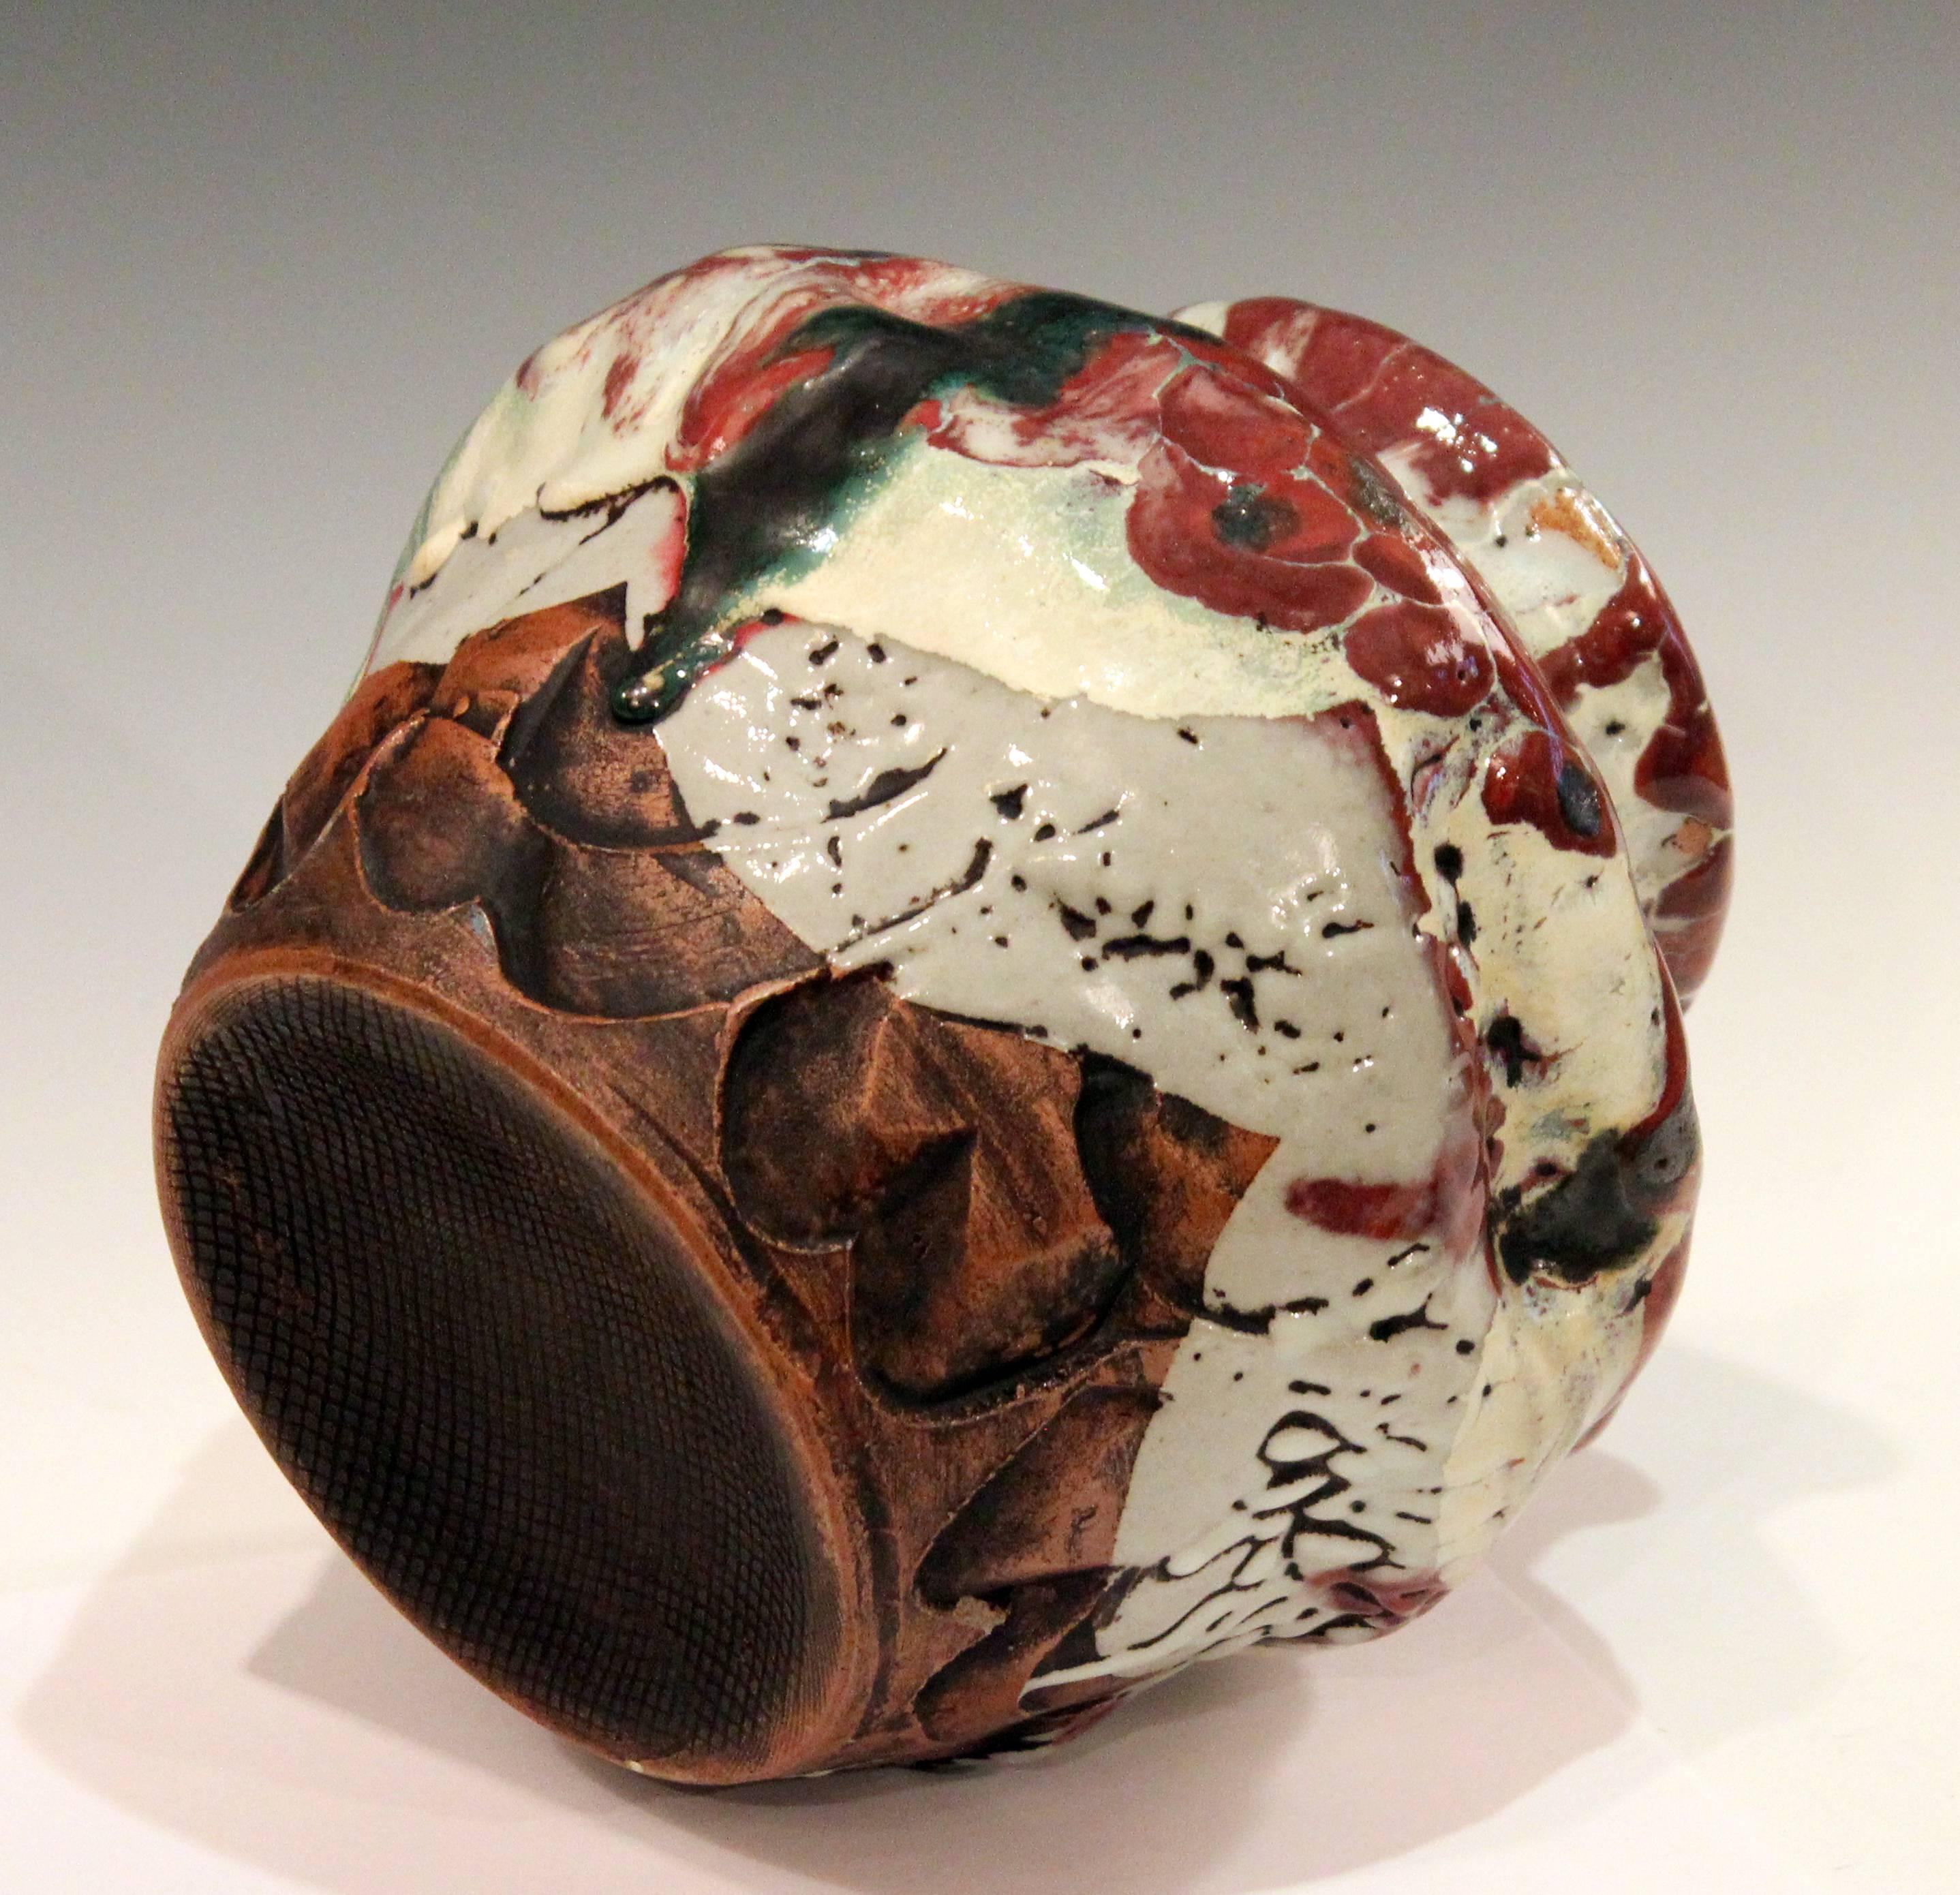 Japanese Awaji Pottery Manipulated Jar with Crawling Lava Glaze